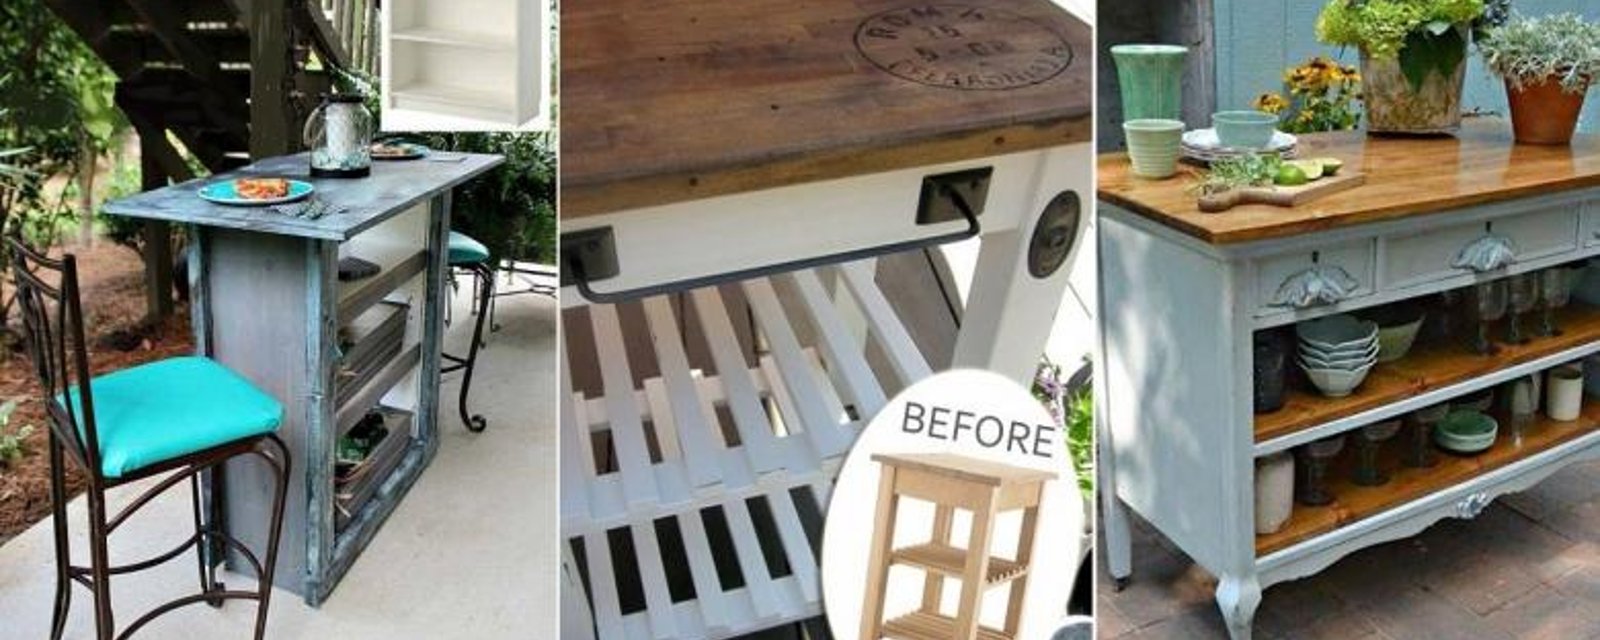 Récupérer un vieux meuble pour bricoler un Îlot de terrasse! 8 Magnifiques modèles à voir! 